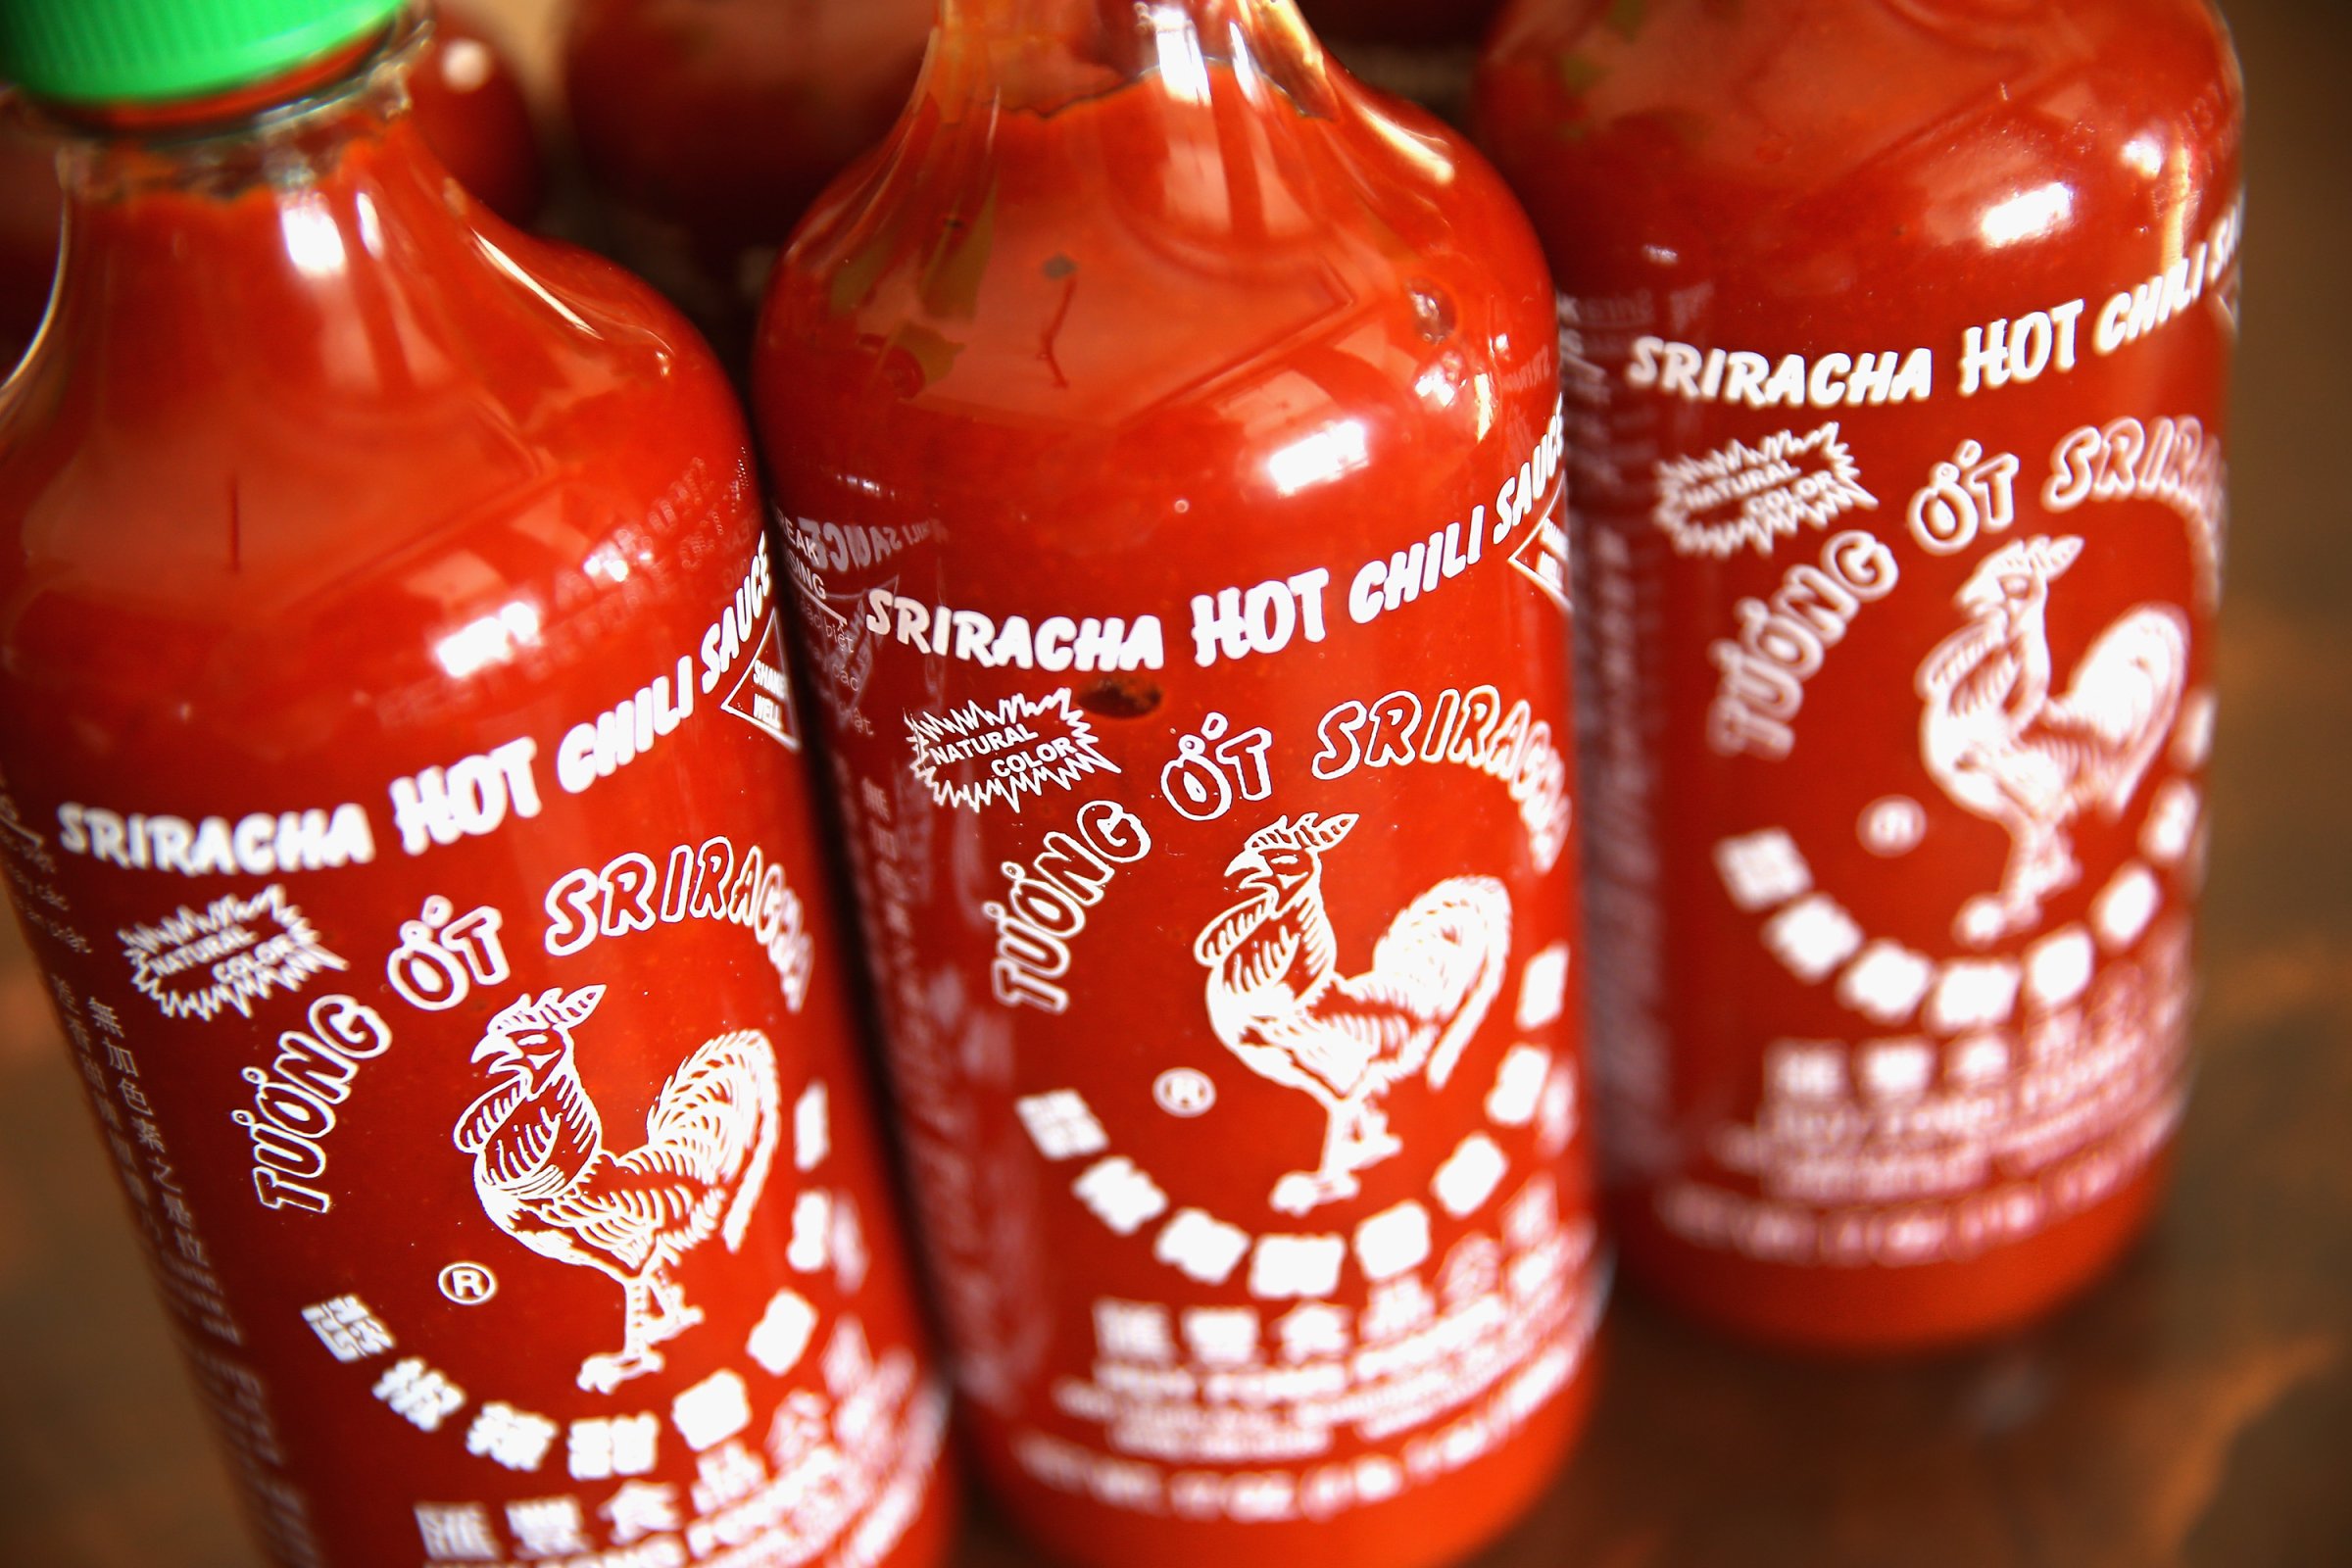 Sriracha hot sauce